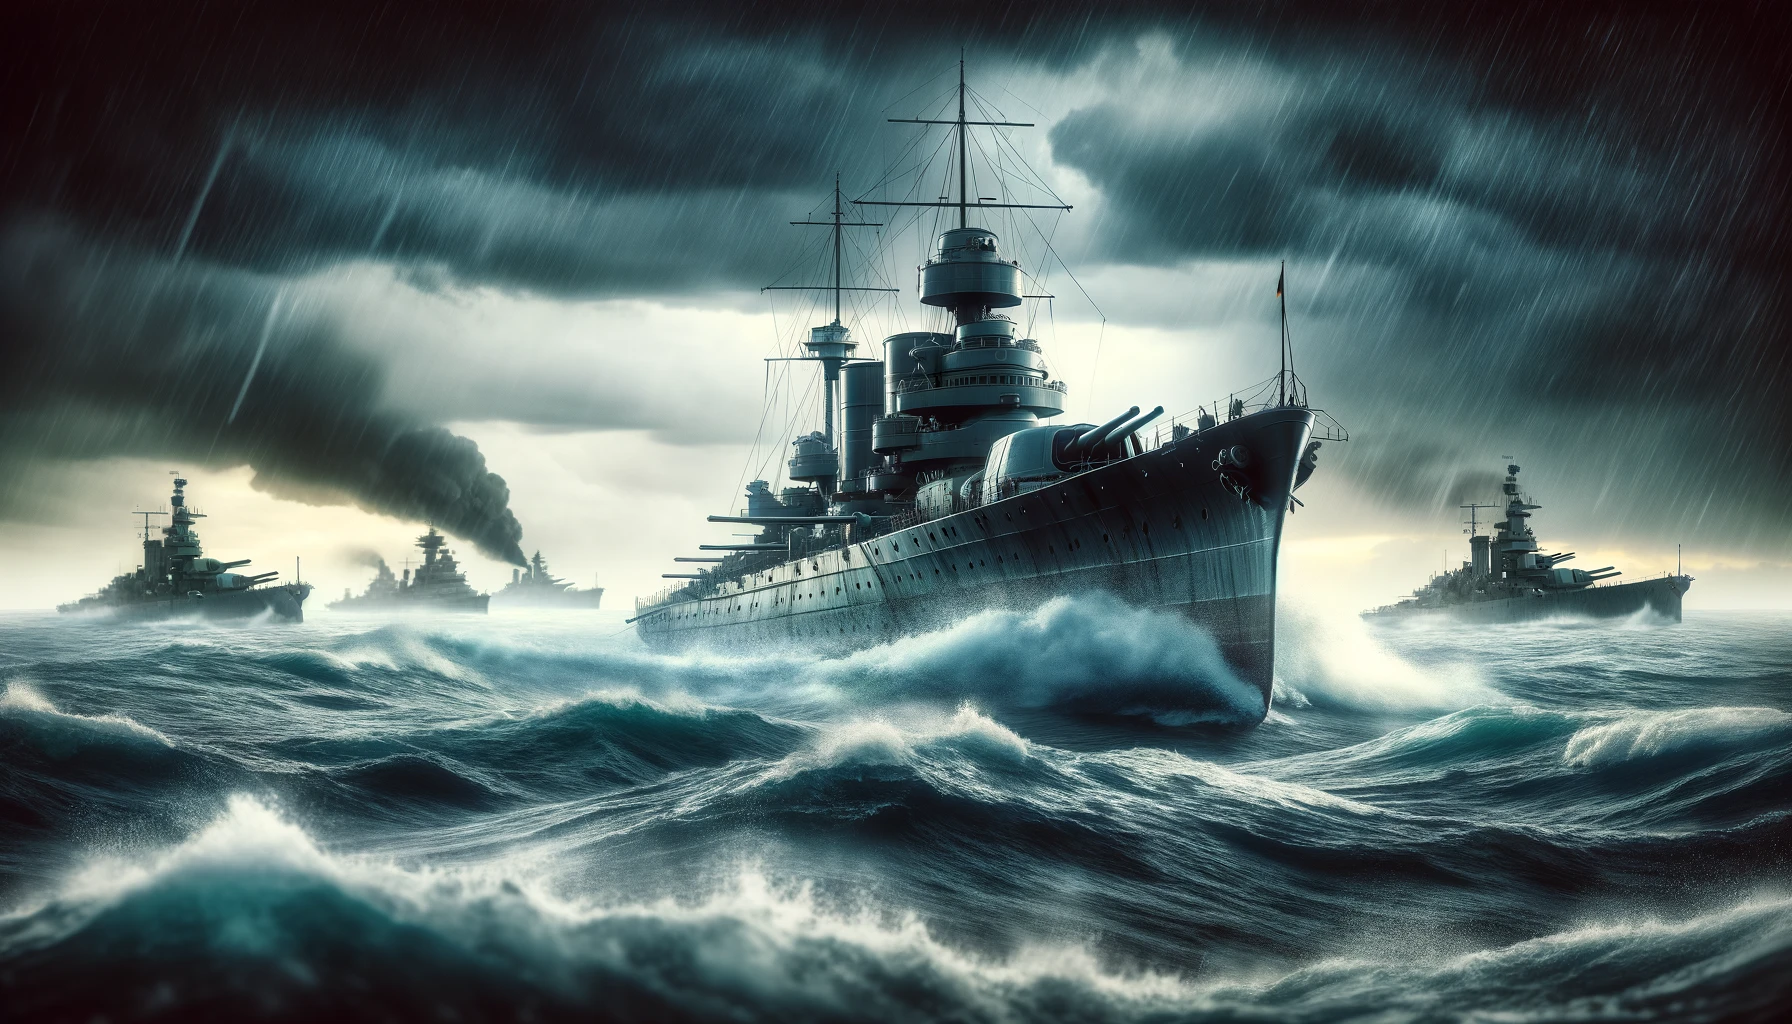 ドイツ戦艦SCHLIEFFENが全速力で敵艦隊に接近中。海は荒れ模様で、戦闘の緊迫感を感じさせるシーン。